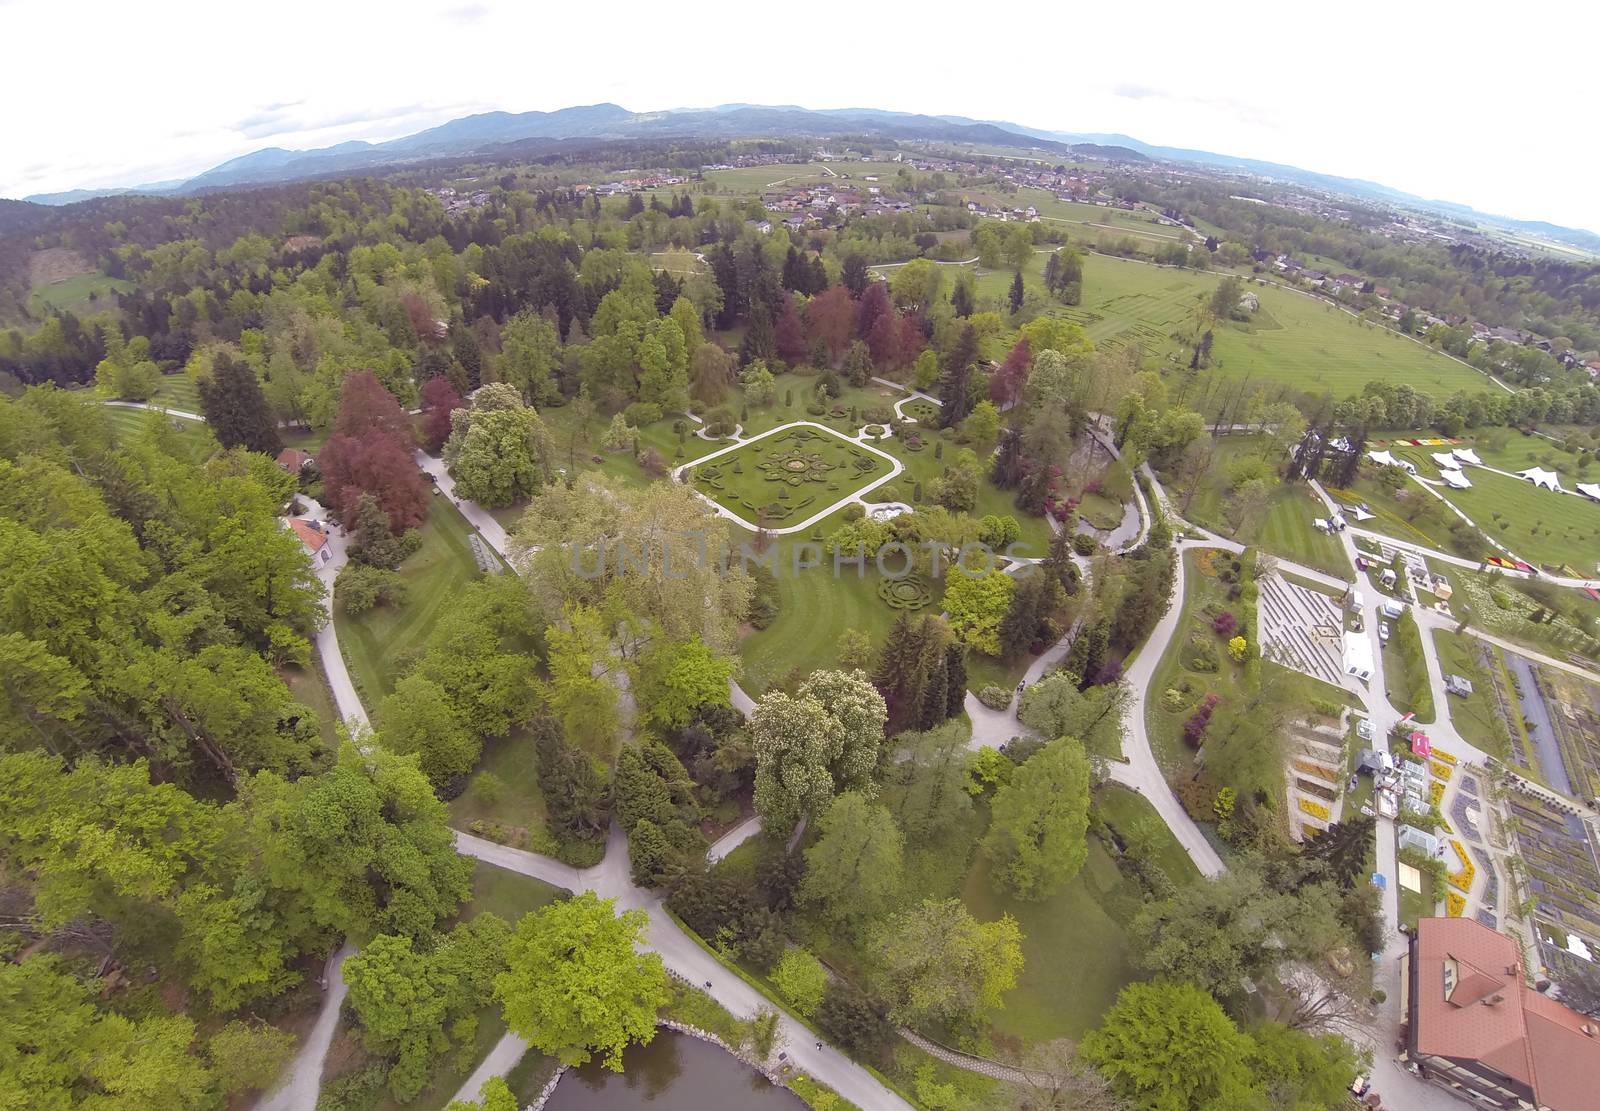 Arboretum in Slovenia by Aarstudio